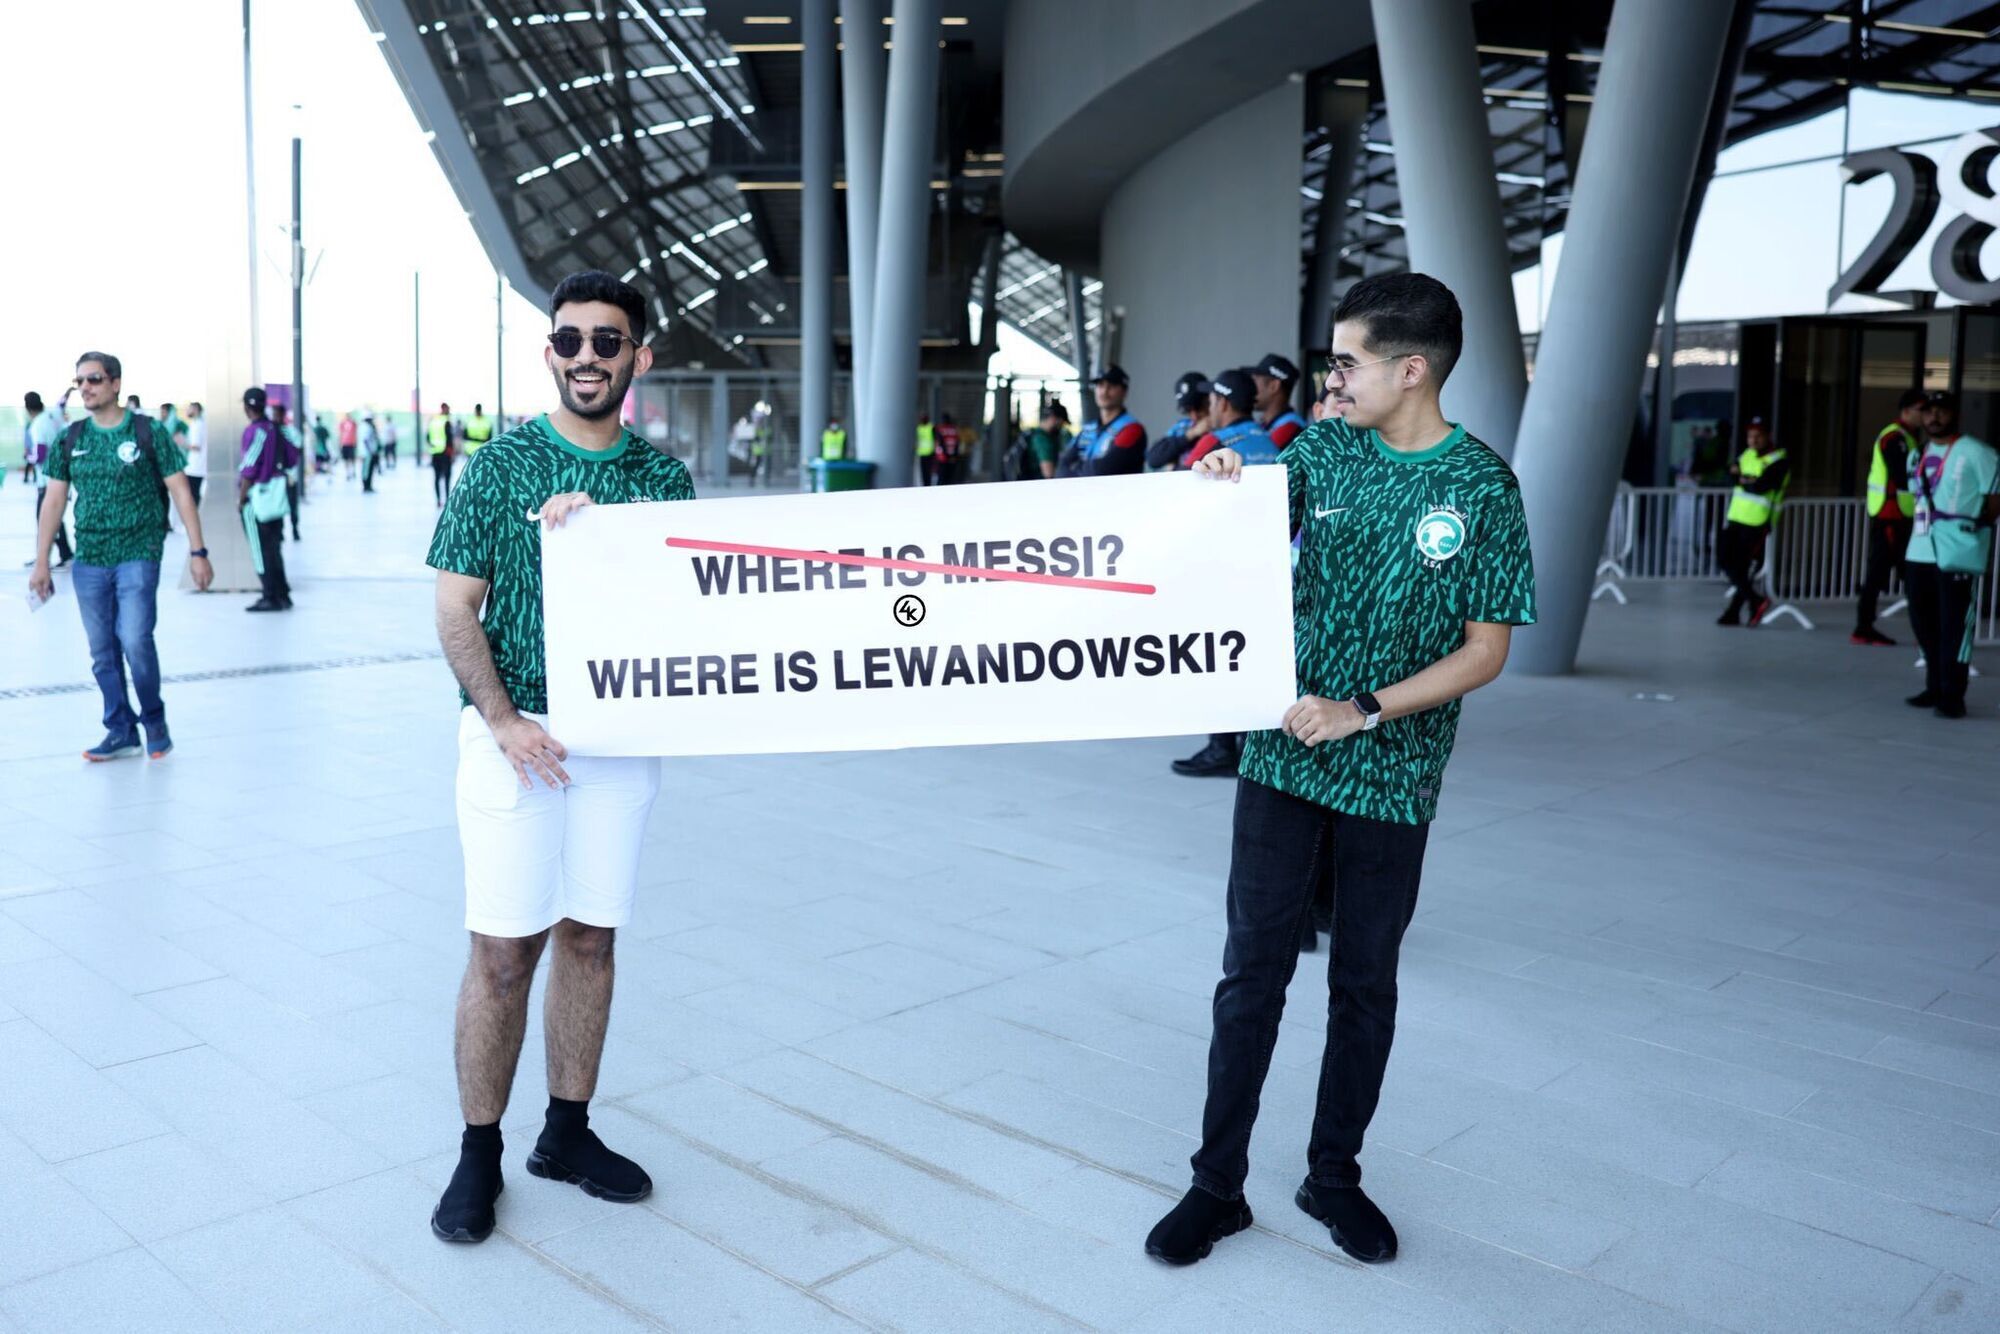 Левандовски стал героем матча и расплакался, добыв первую победу для Польши на ЧМ-2022. Видео